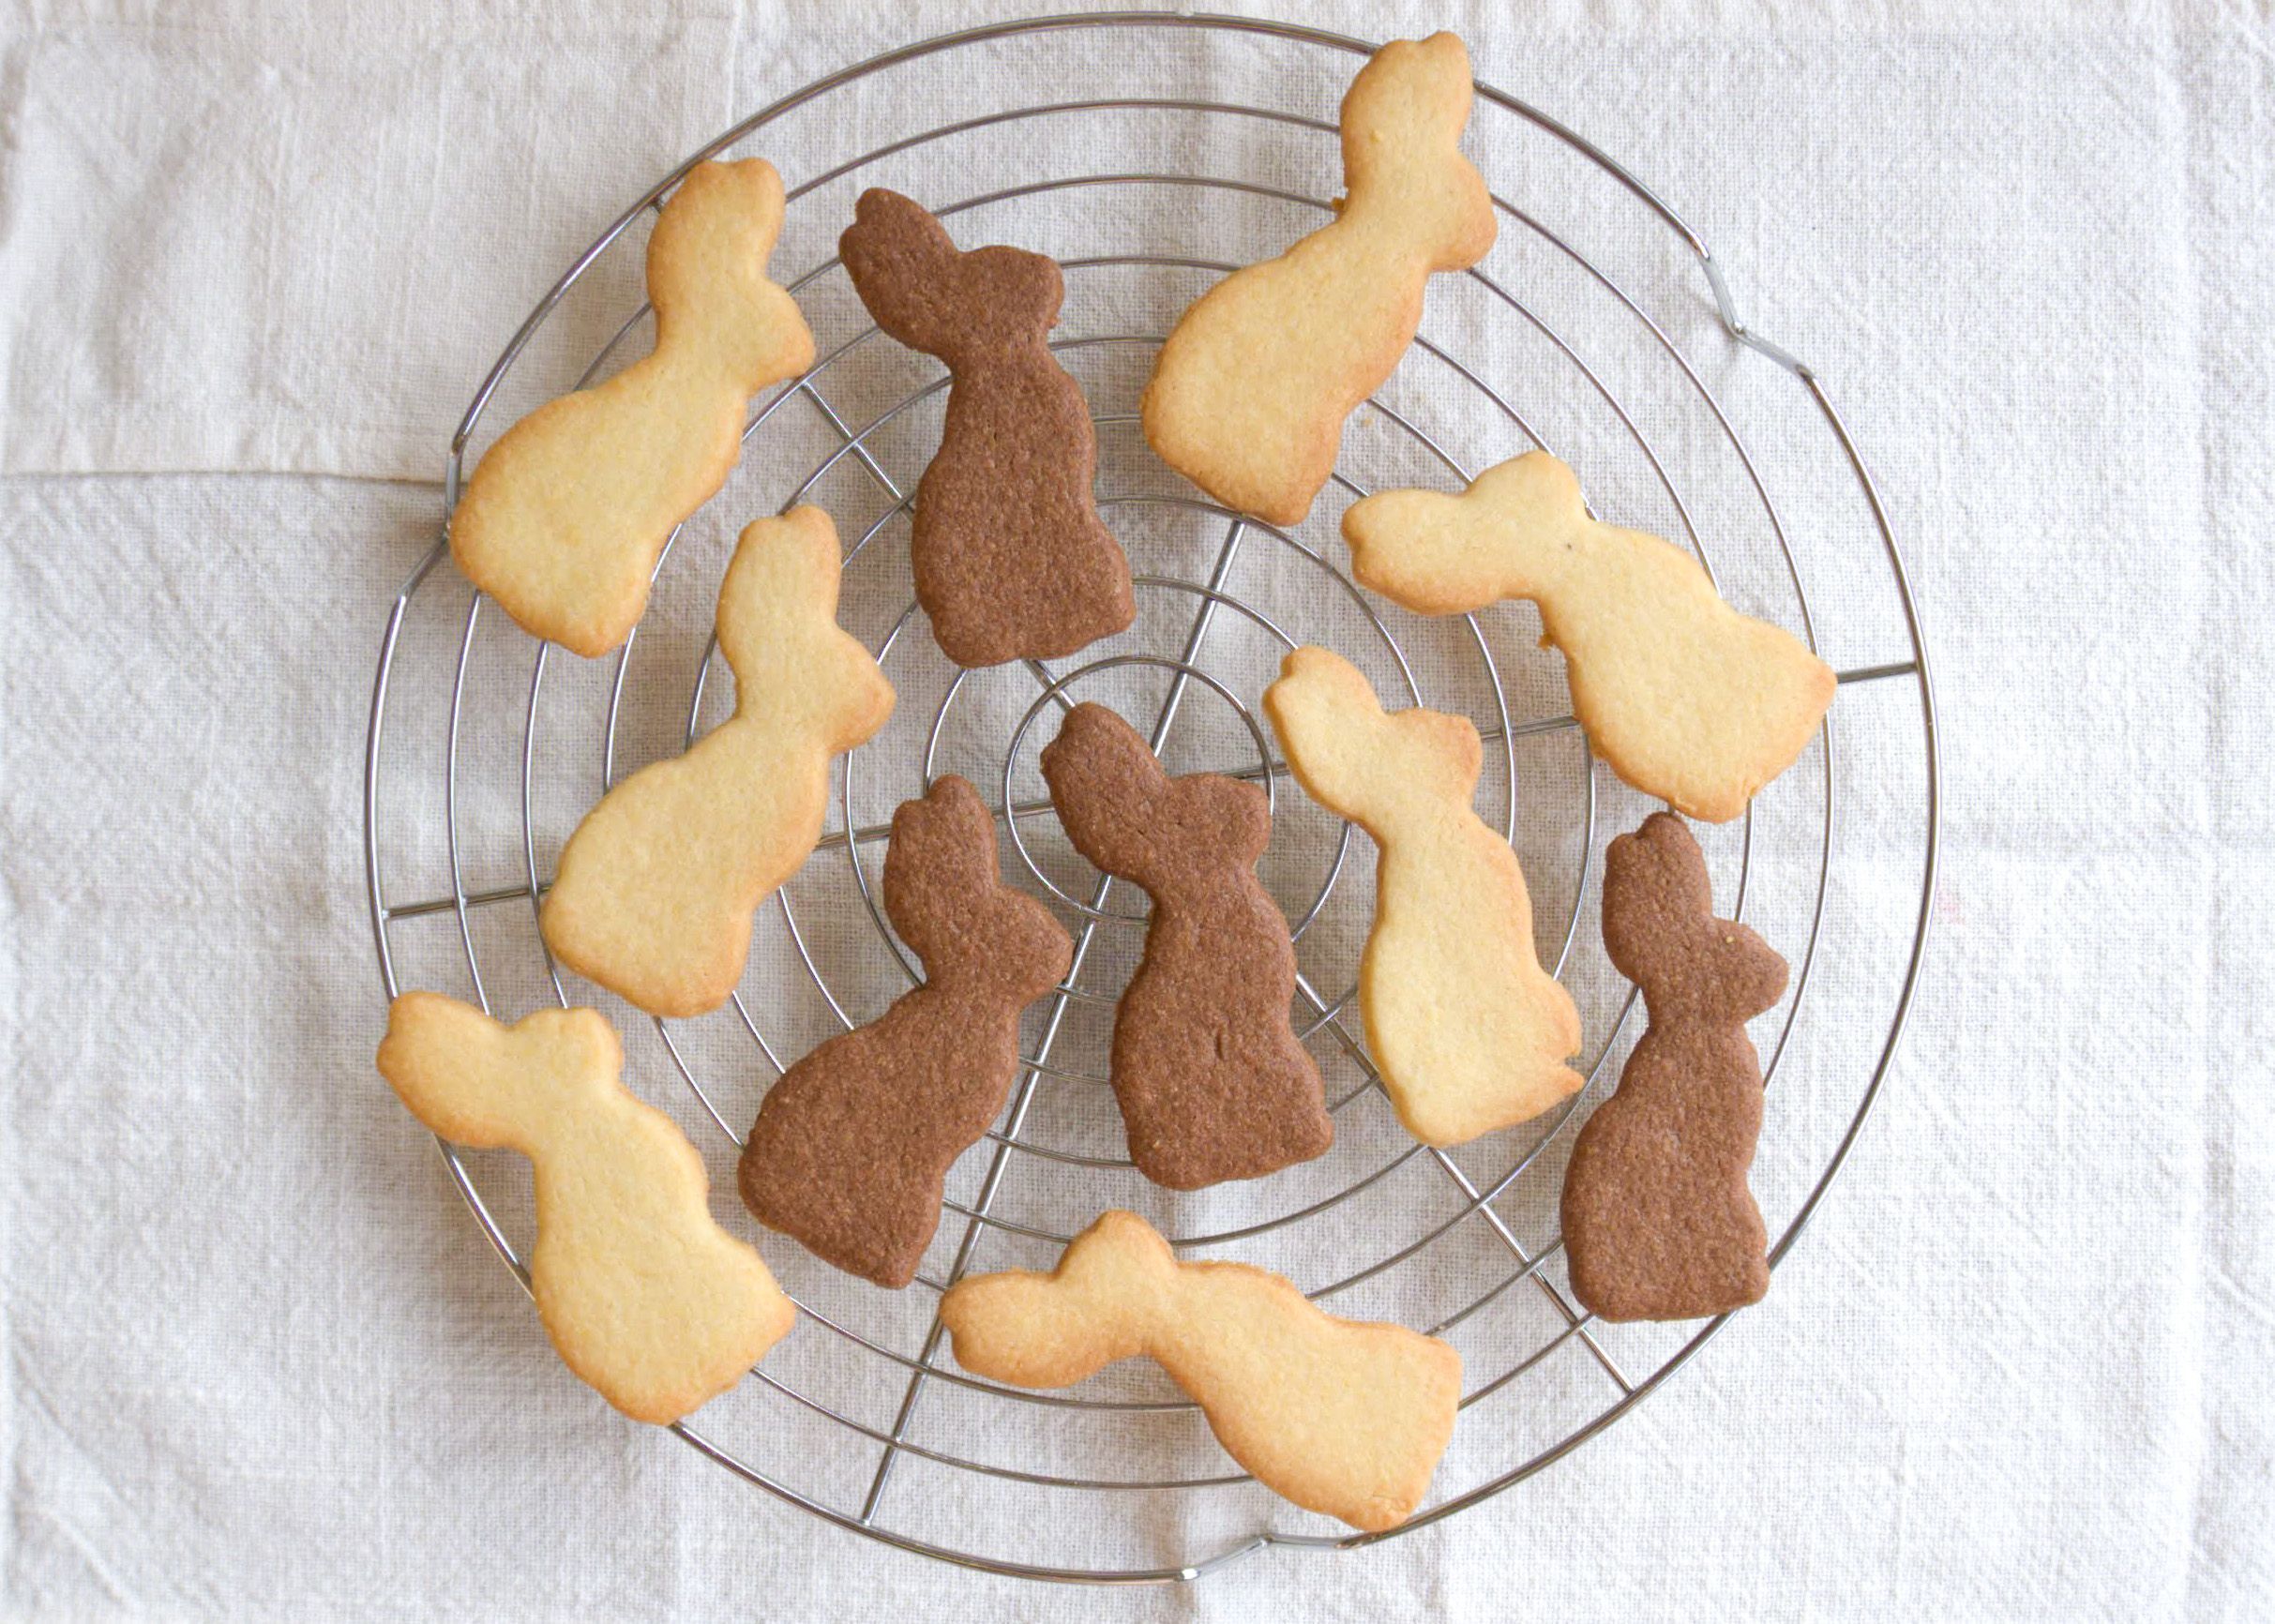 Dieses Bild zeigt helle und dunkle Osterhasen Kekse